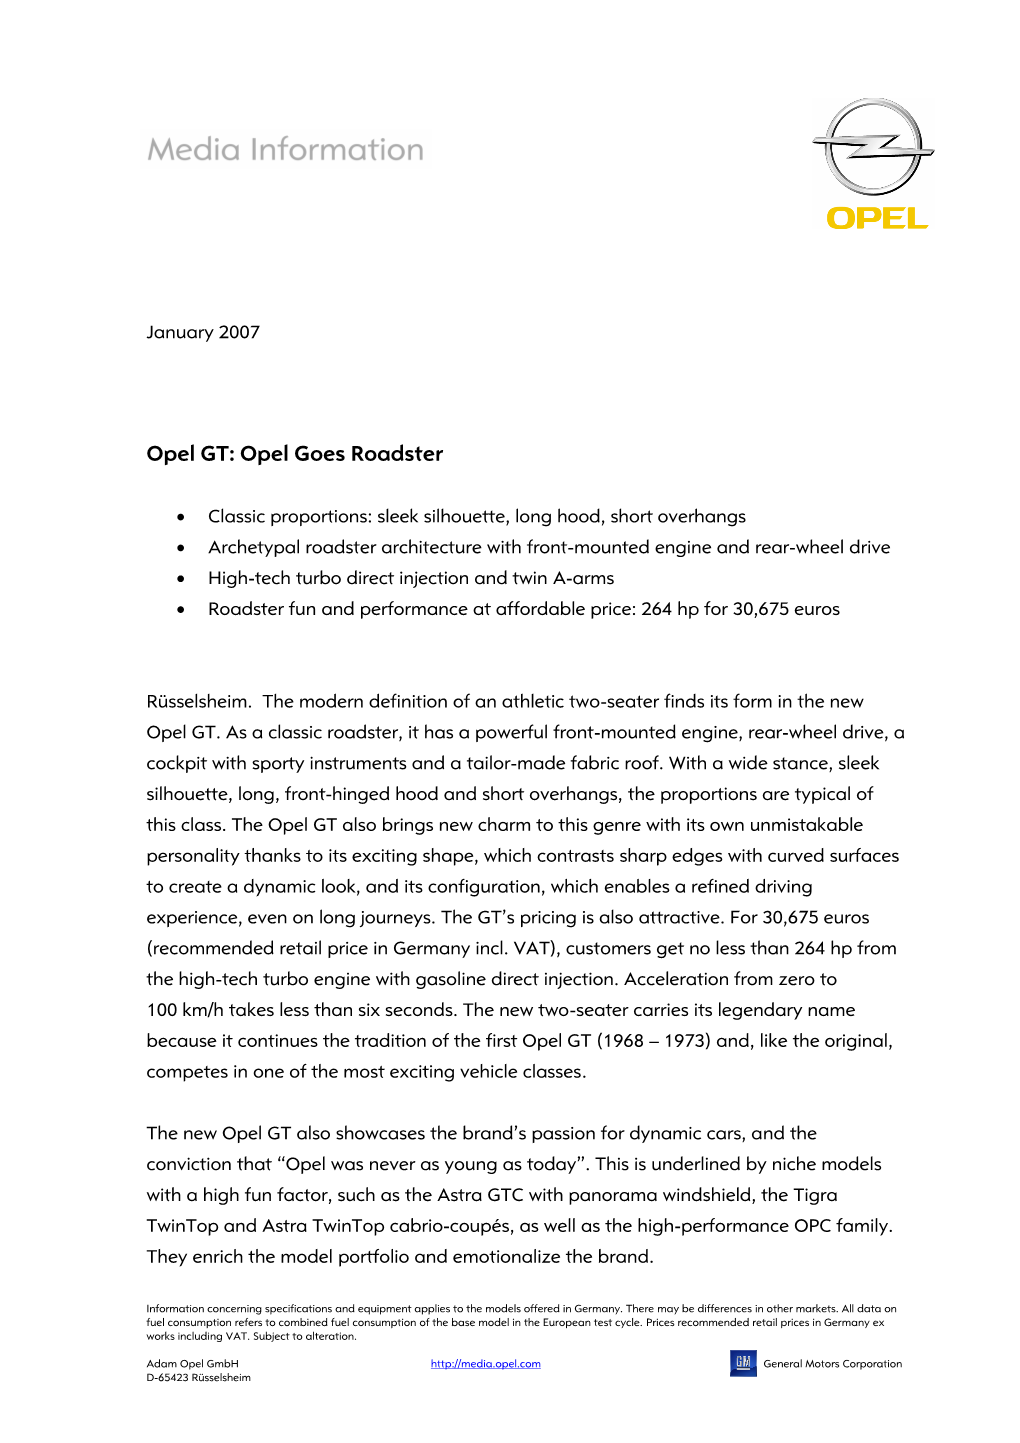 Opel GT: Opel Goes Roadster